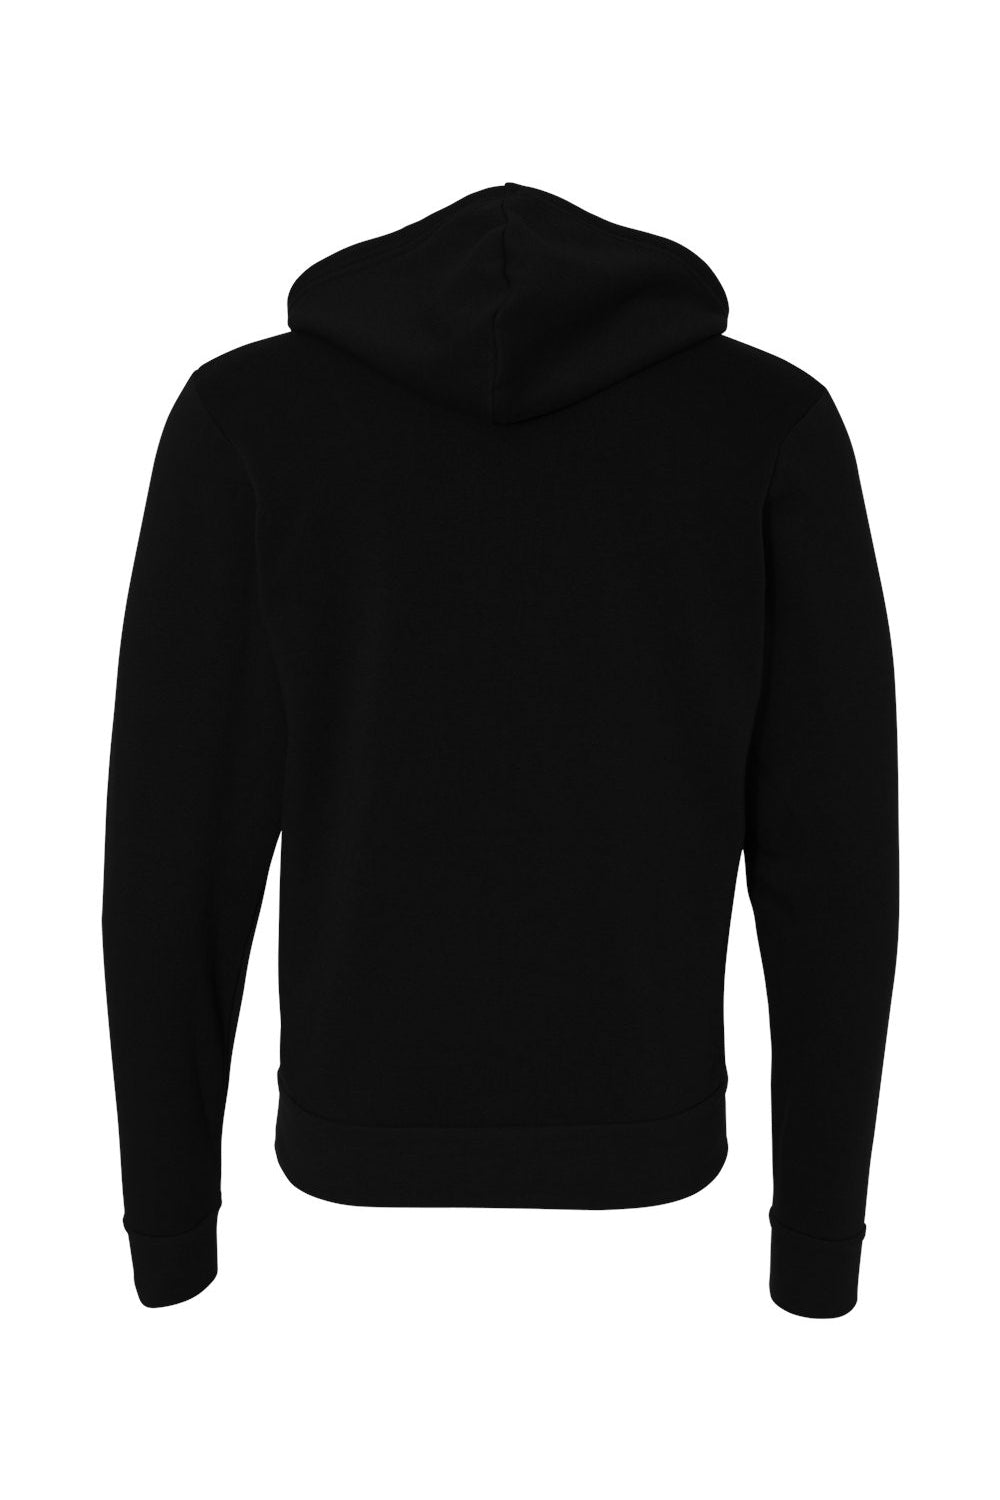 Bella + Canvas BC3739/3739 Mens Fleece Full Zip Hooded Sweatshirt Hoodie Black Flat Back